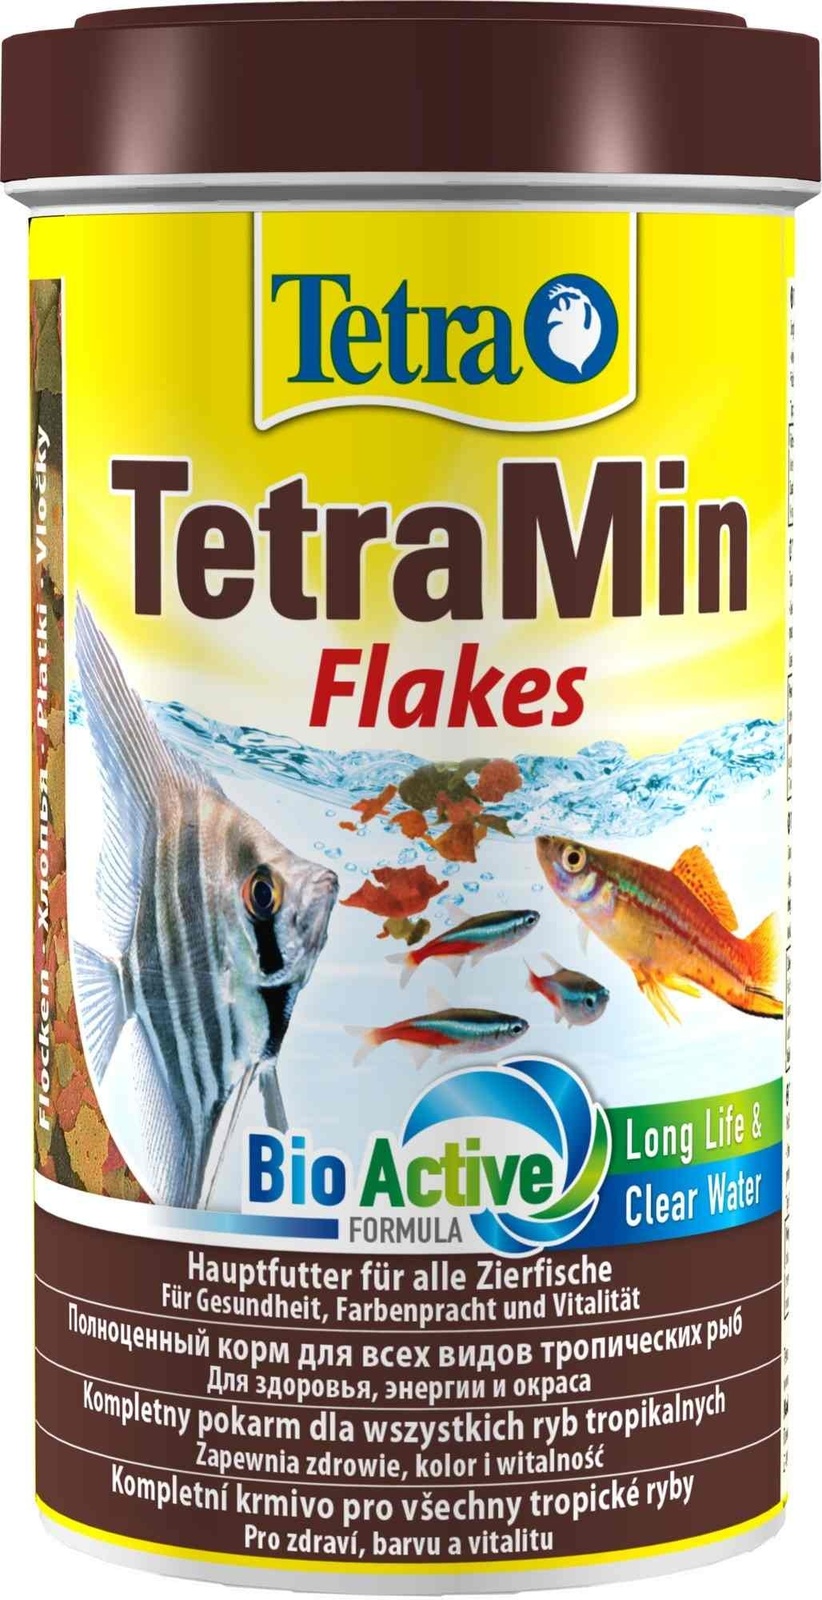 Tetra (корма) Tetra (корма) корм для всех видов тропических рыб. хлопья TetraMin Flakes (100 г) 37680